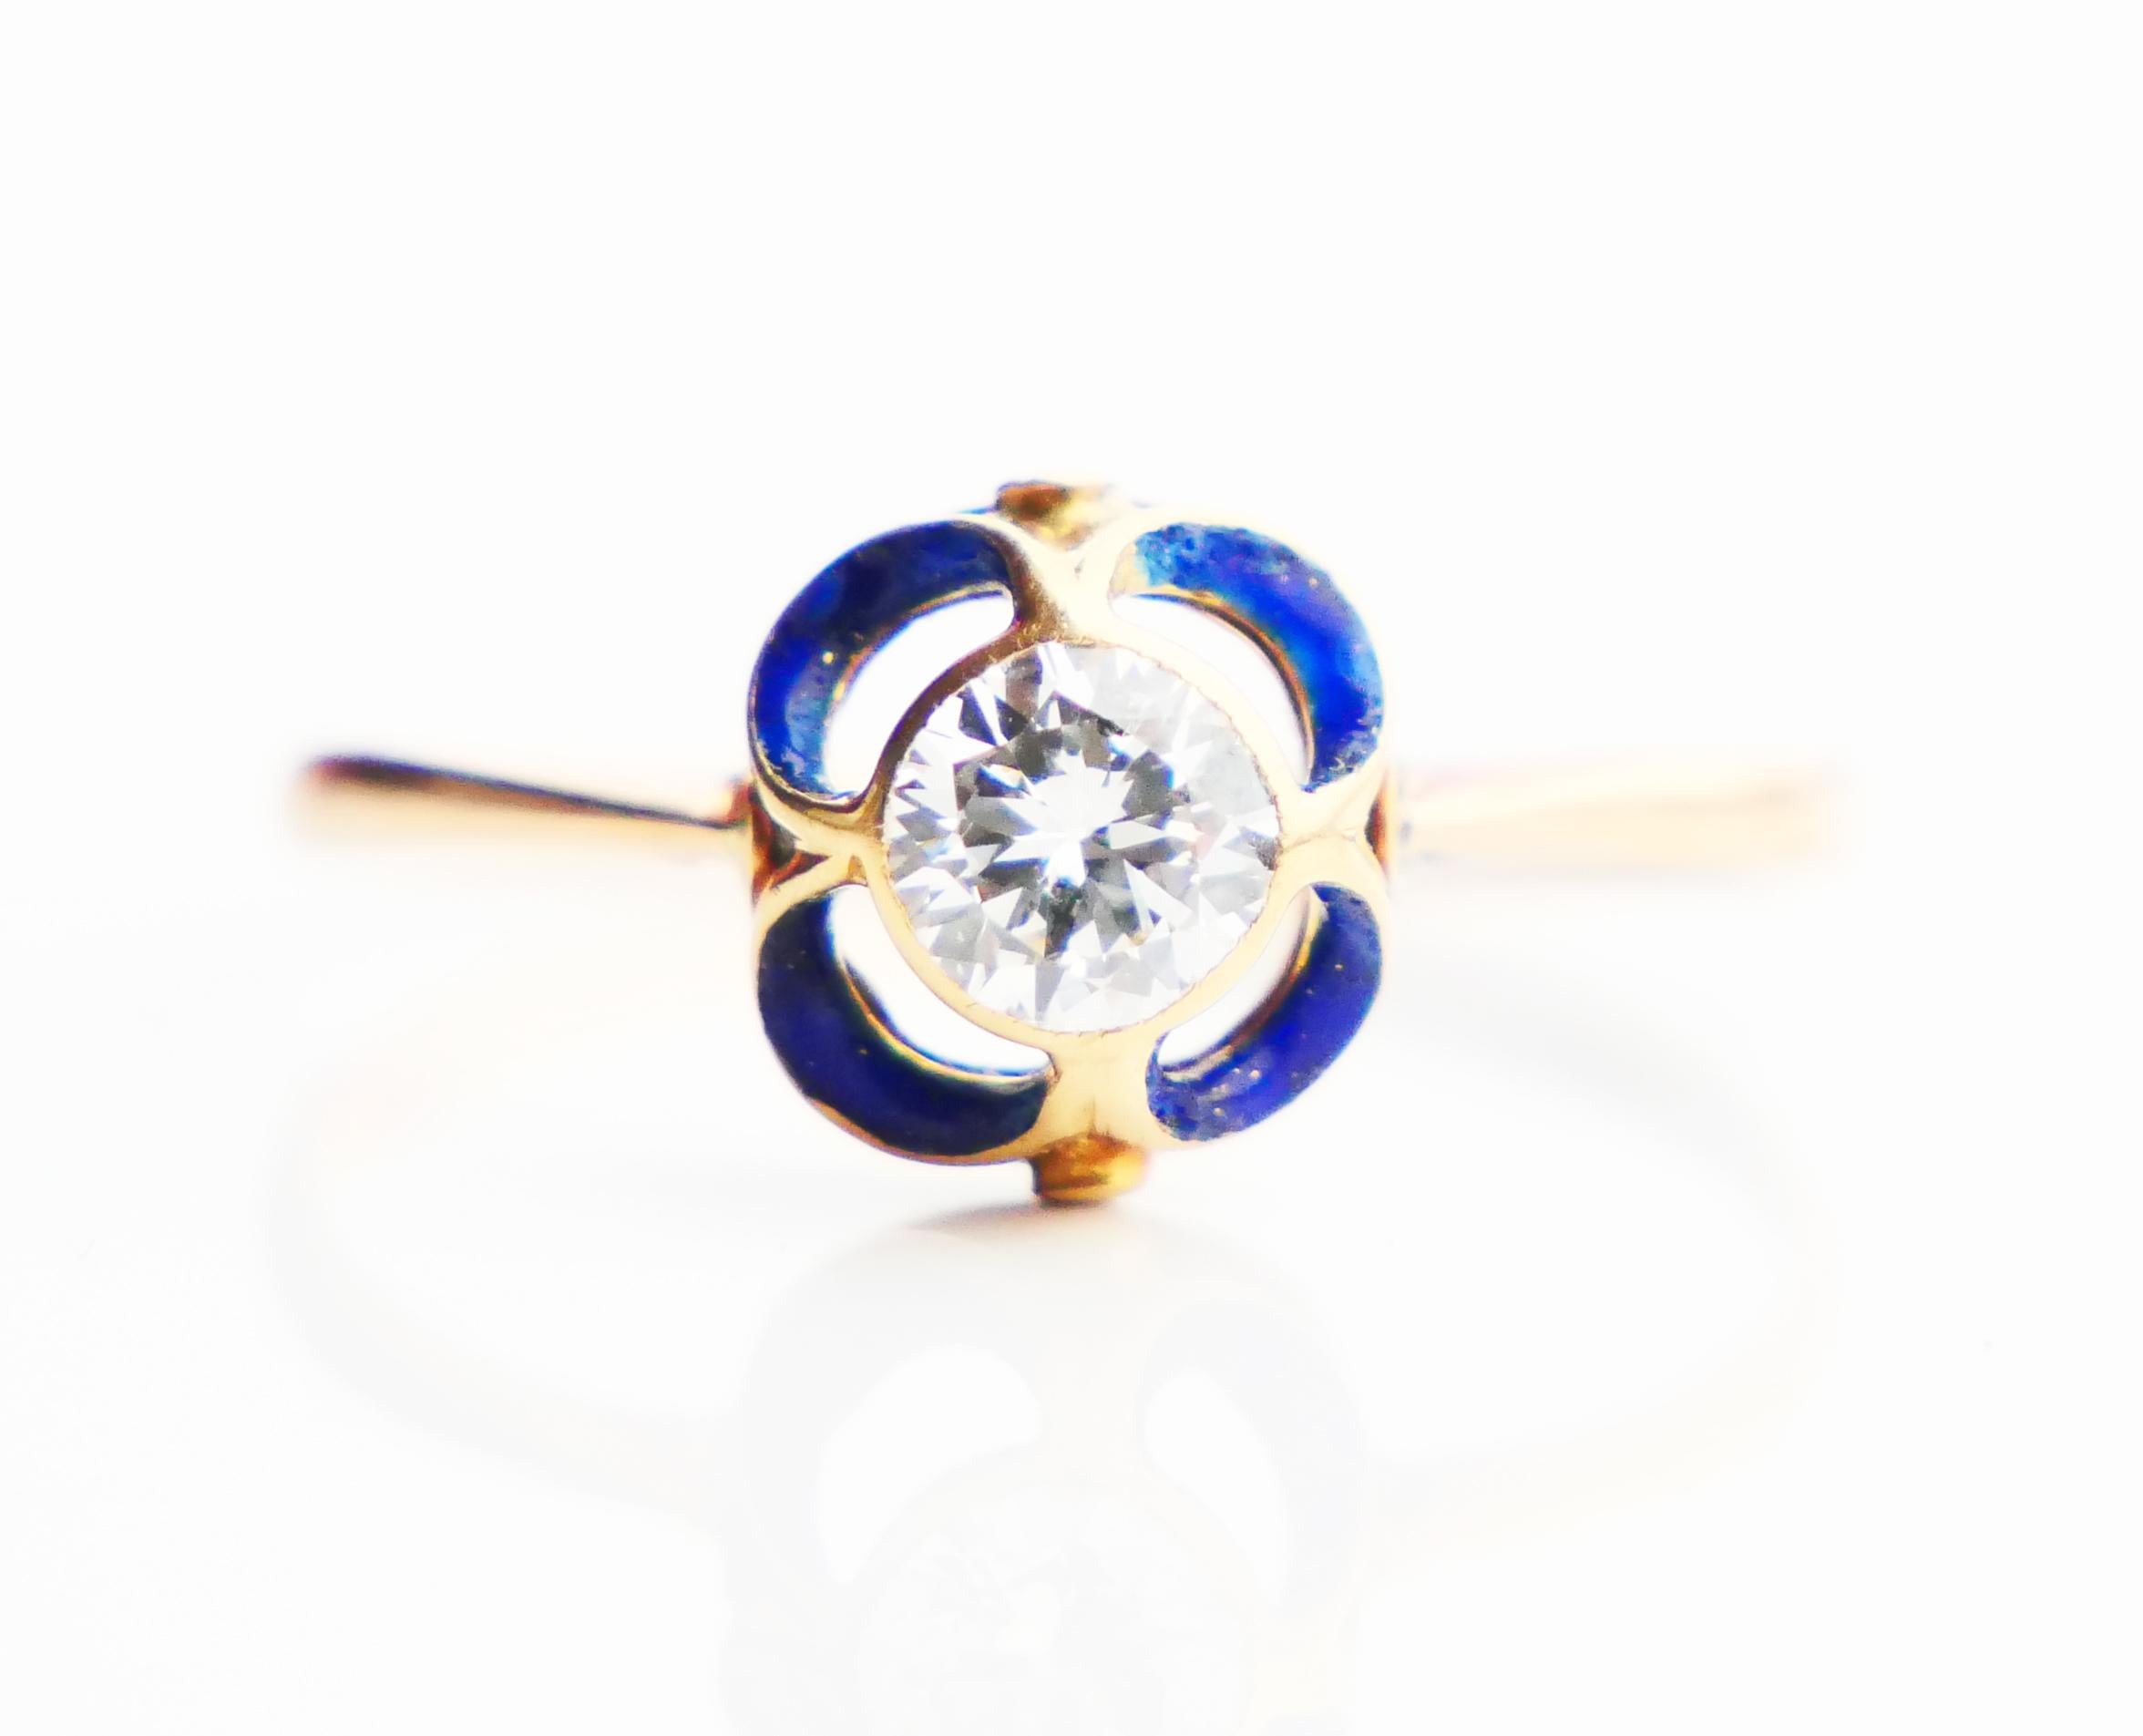 1904 Nordic Art Nouveau Ring 05ct. Diamond Blue Enamel 18K Gold ØUS9.5/2.5gr For Sale 1